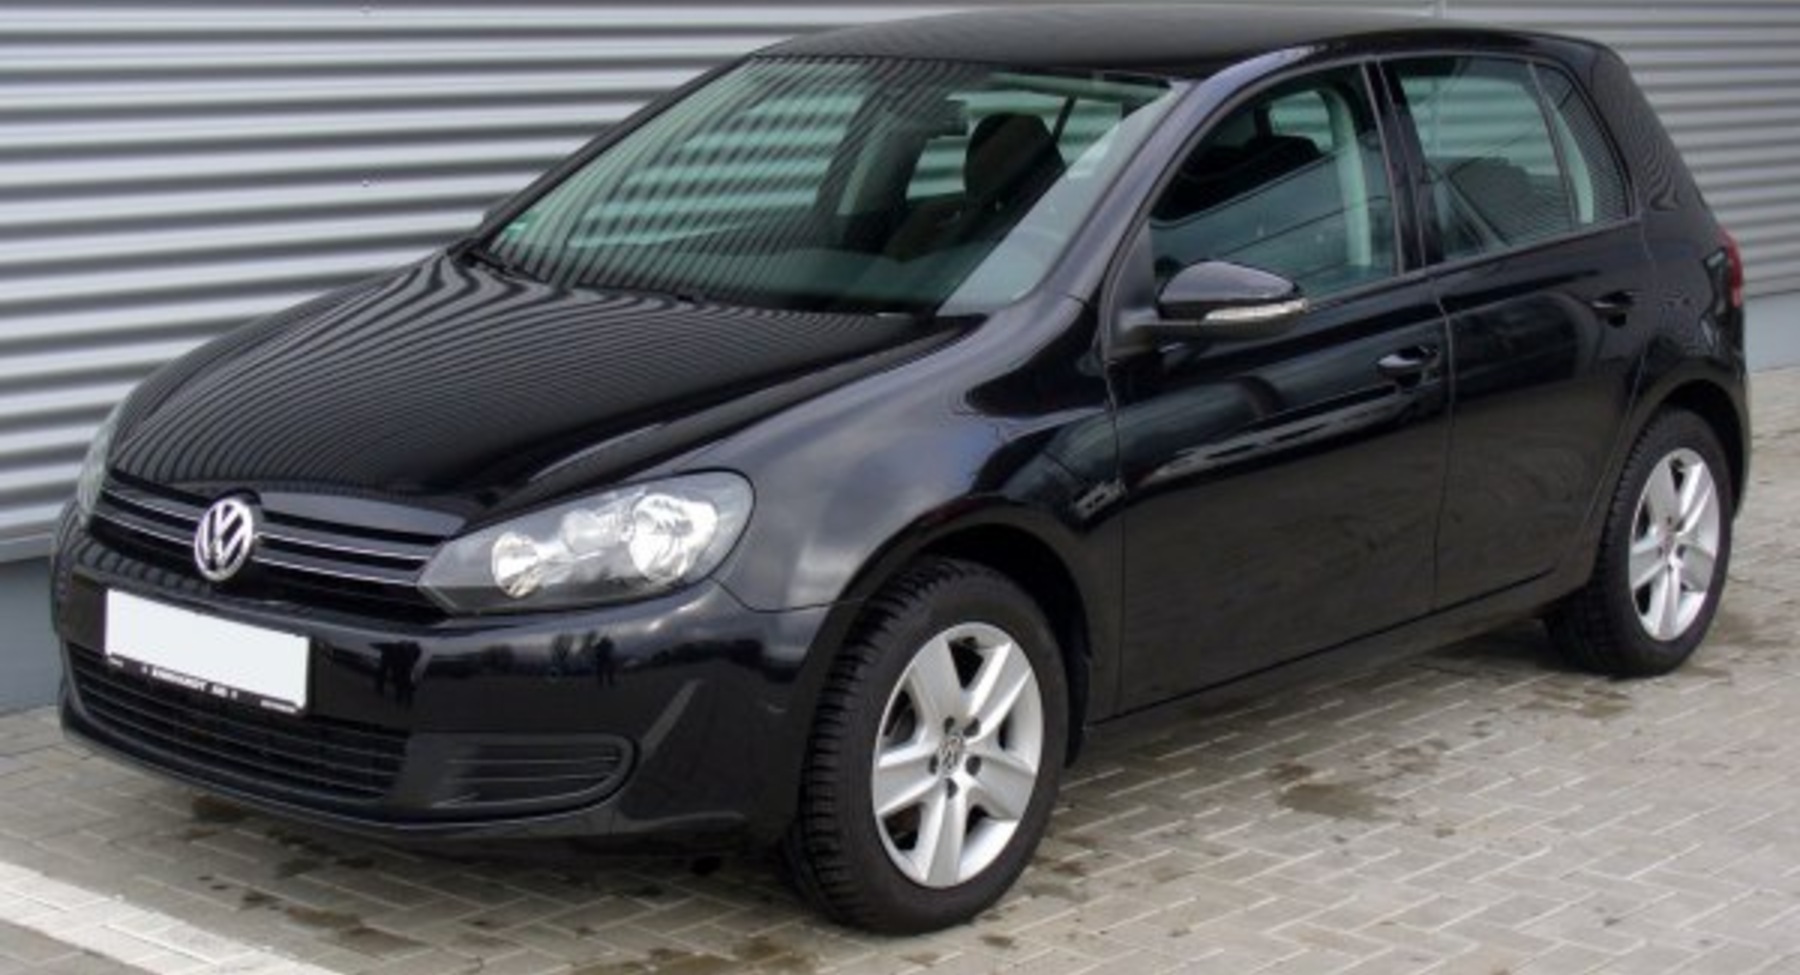 Volkswagen Golf VI (5-door) 1.2 TSI (105 Hp) DSG 2009, 2010, 2011, 2012 